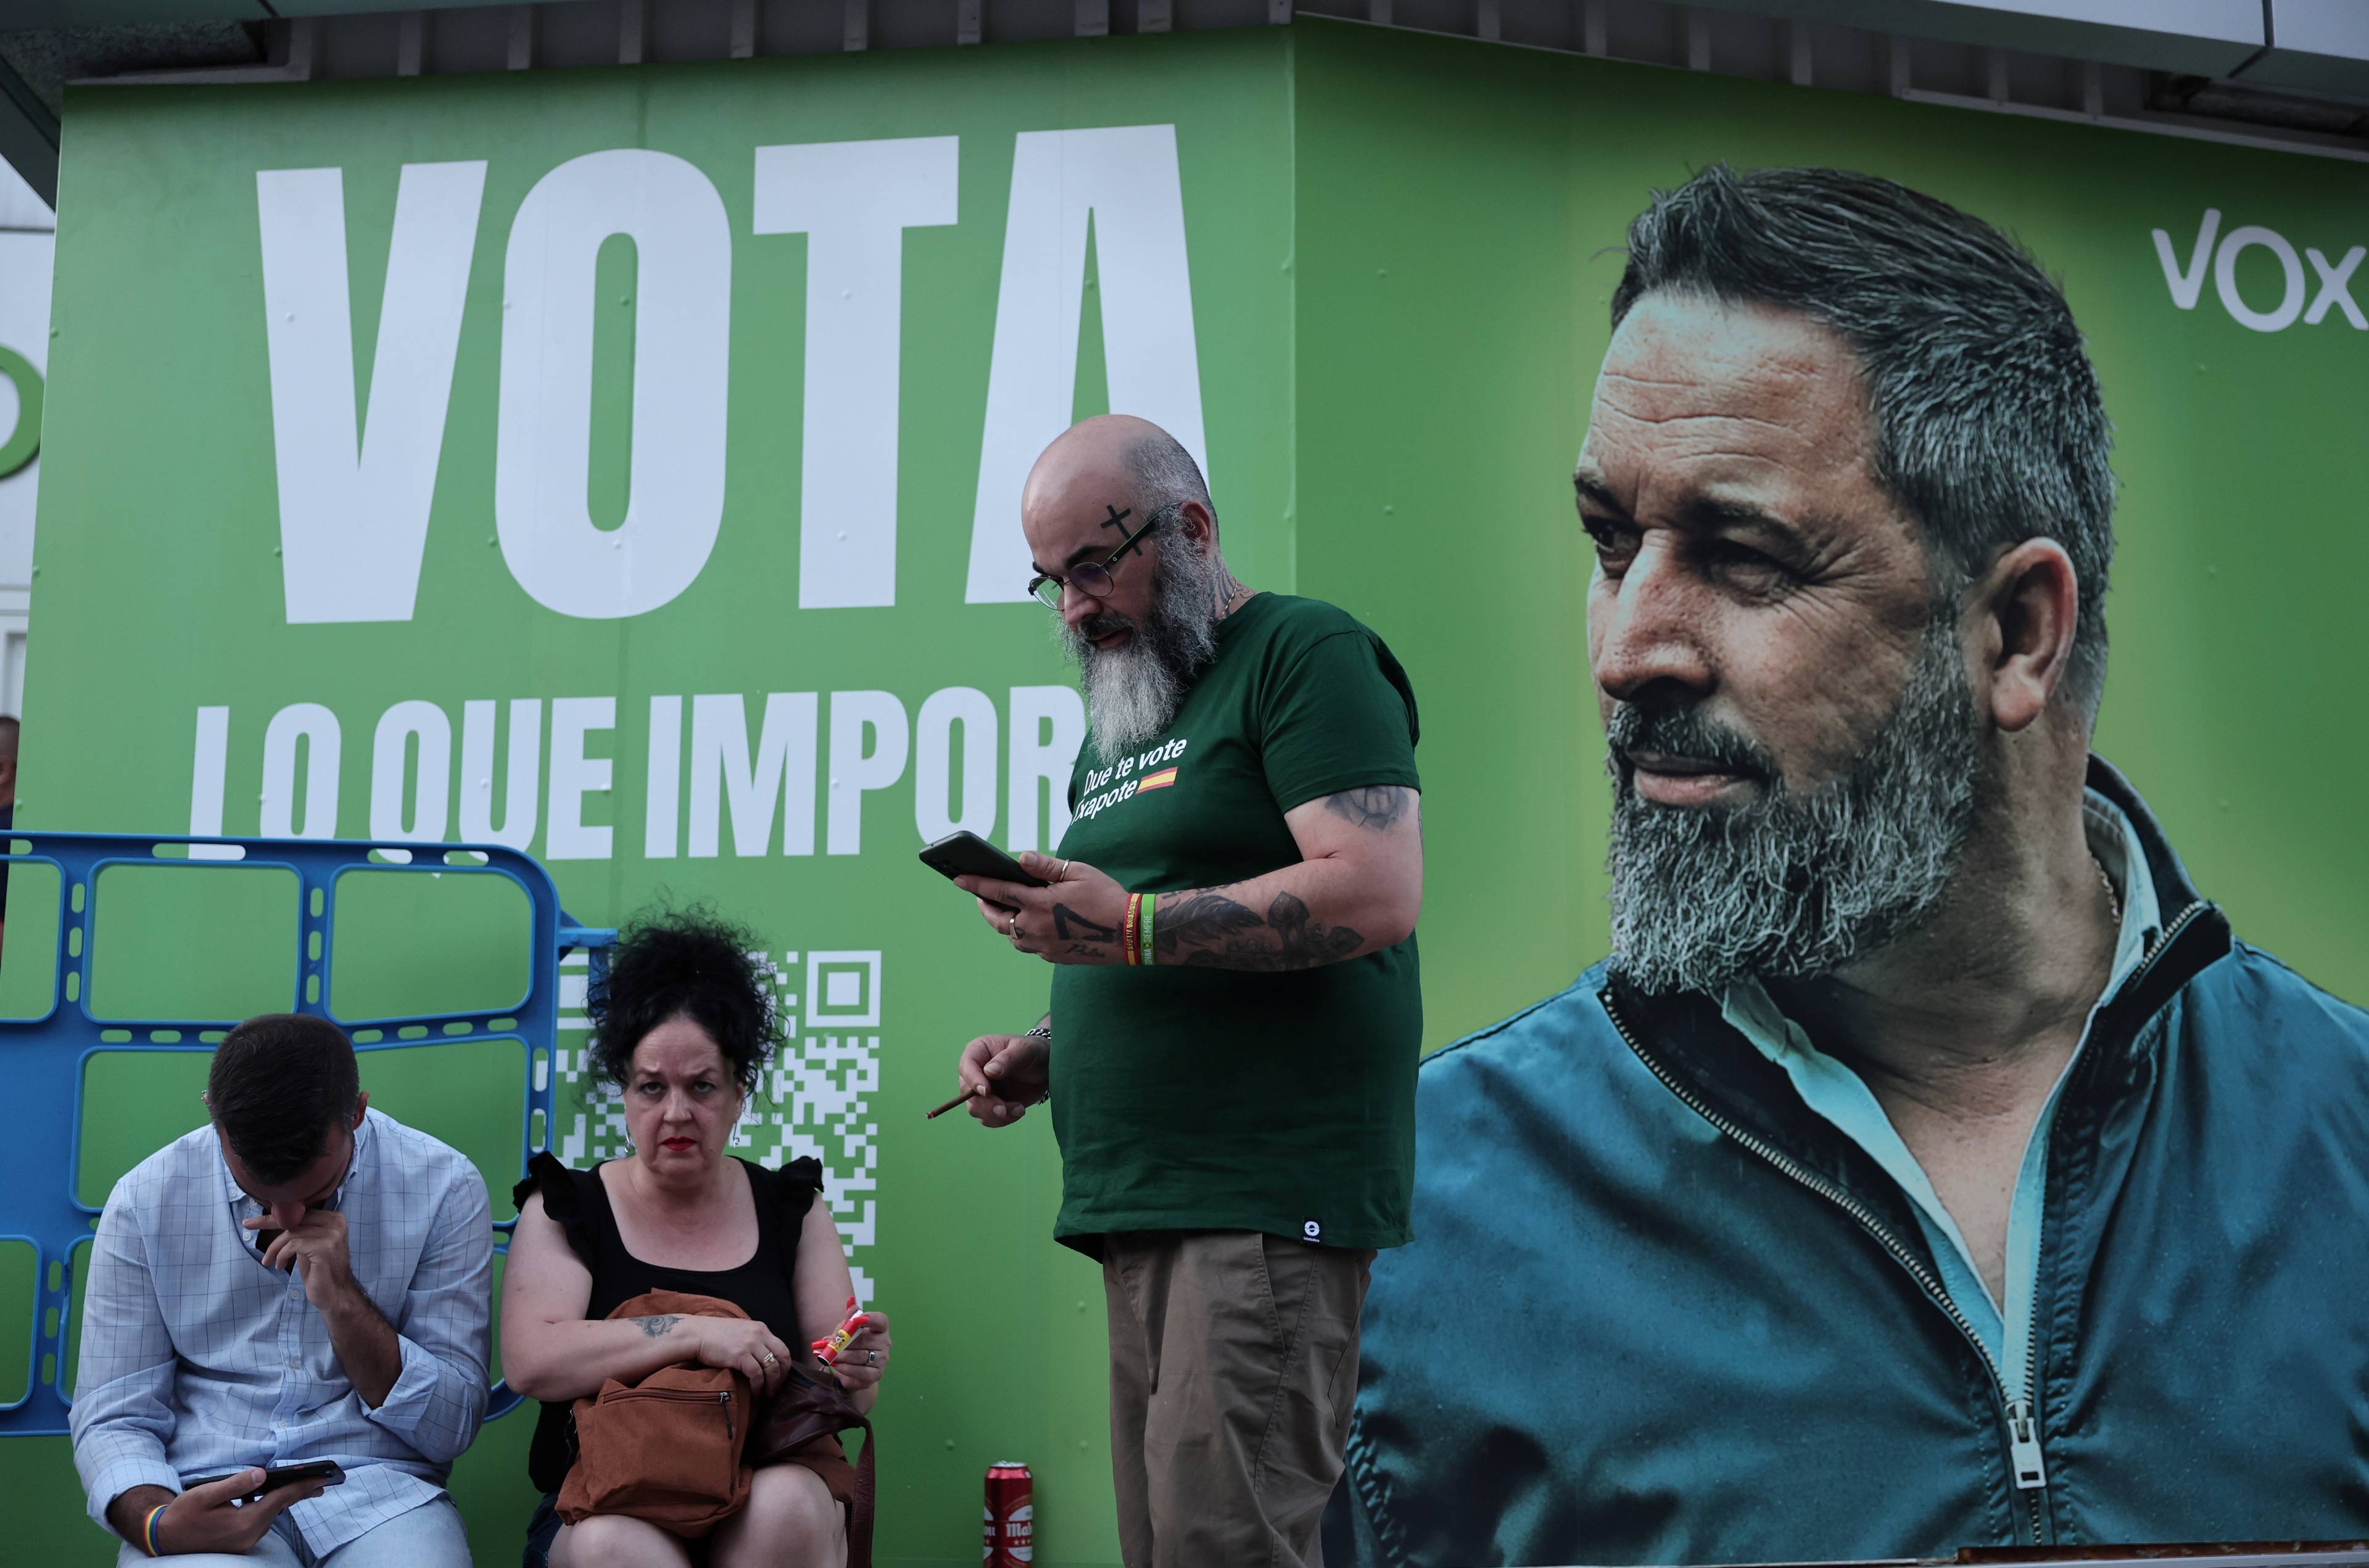 Ludzie na tle zielonego plakatu z brodatym mężczyzną